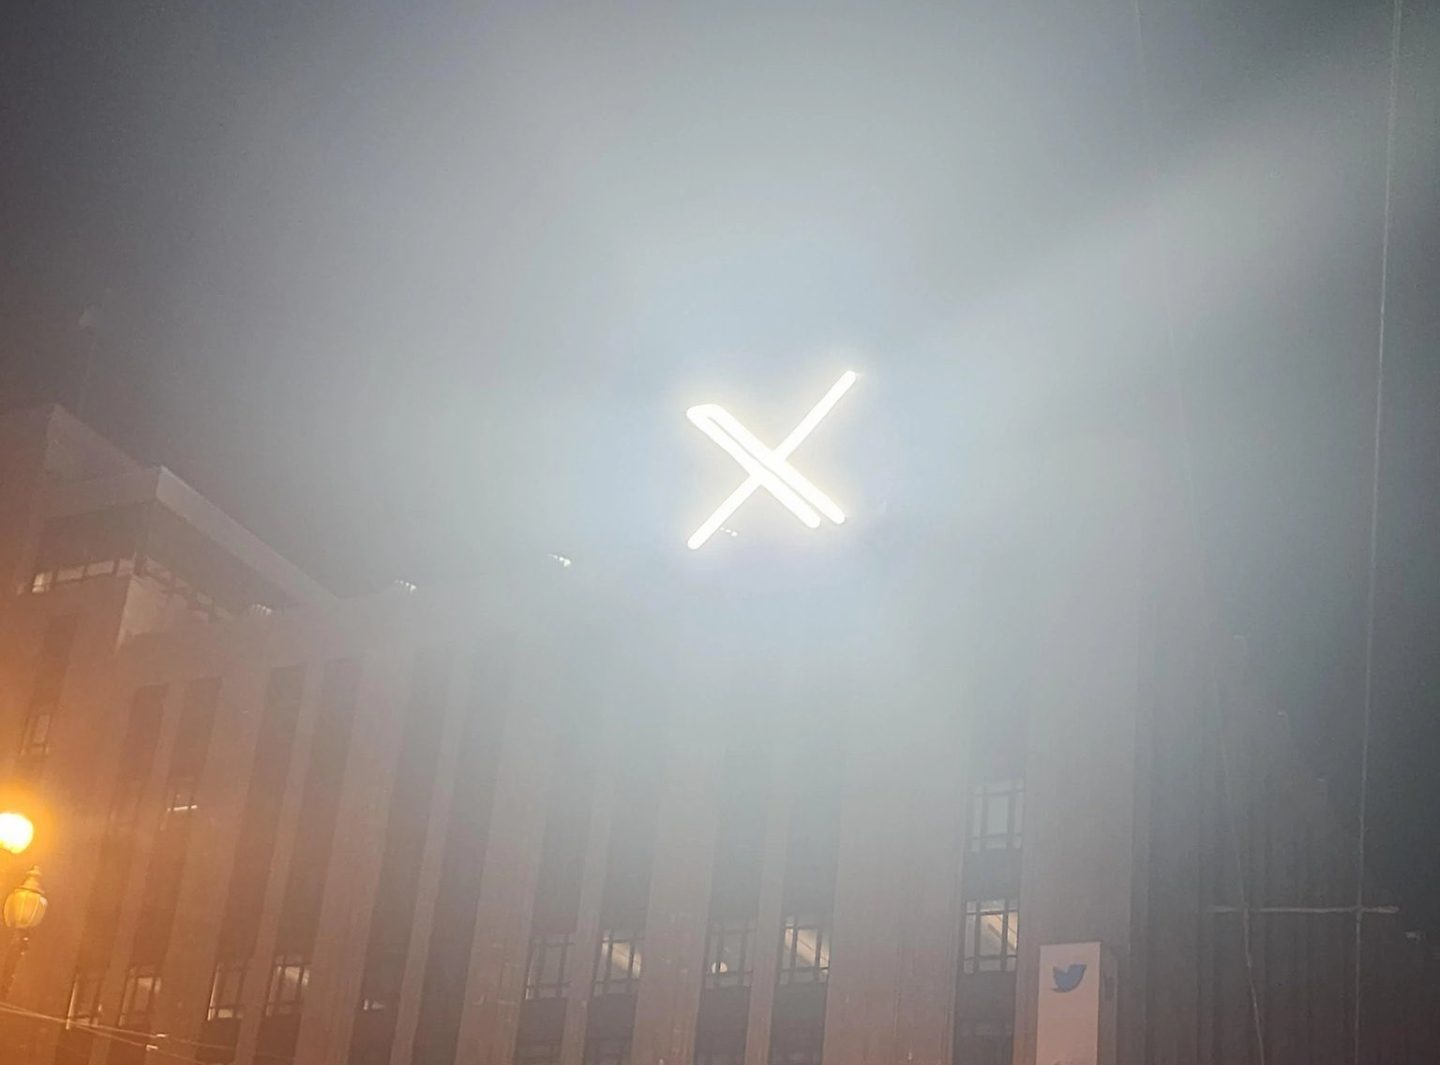 Cidade dos EUA investiga violação na instalação de 'X' em prédio do Twitter